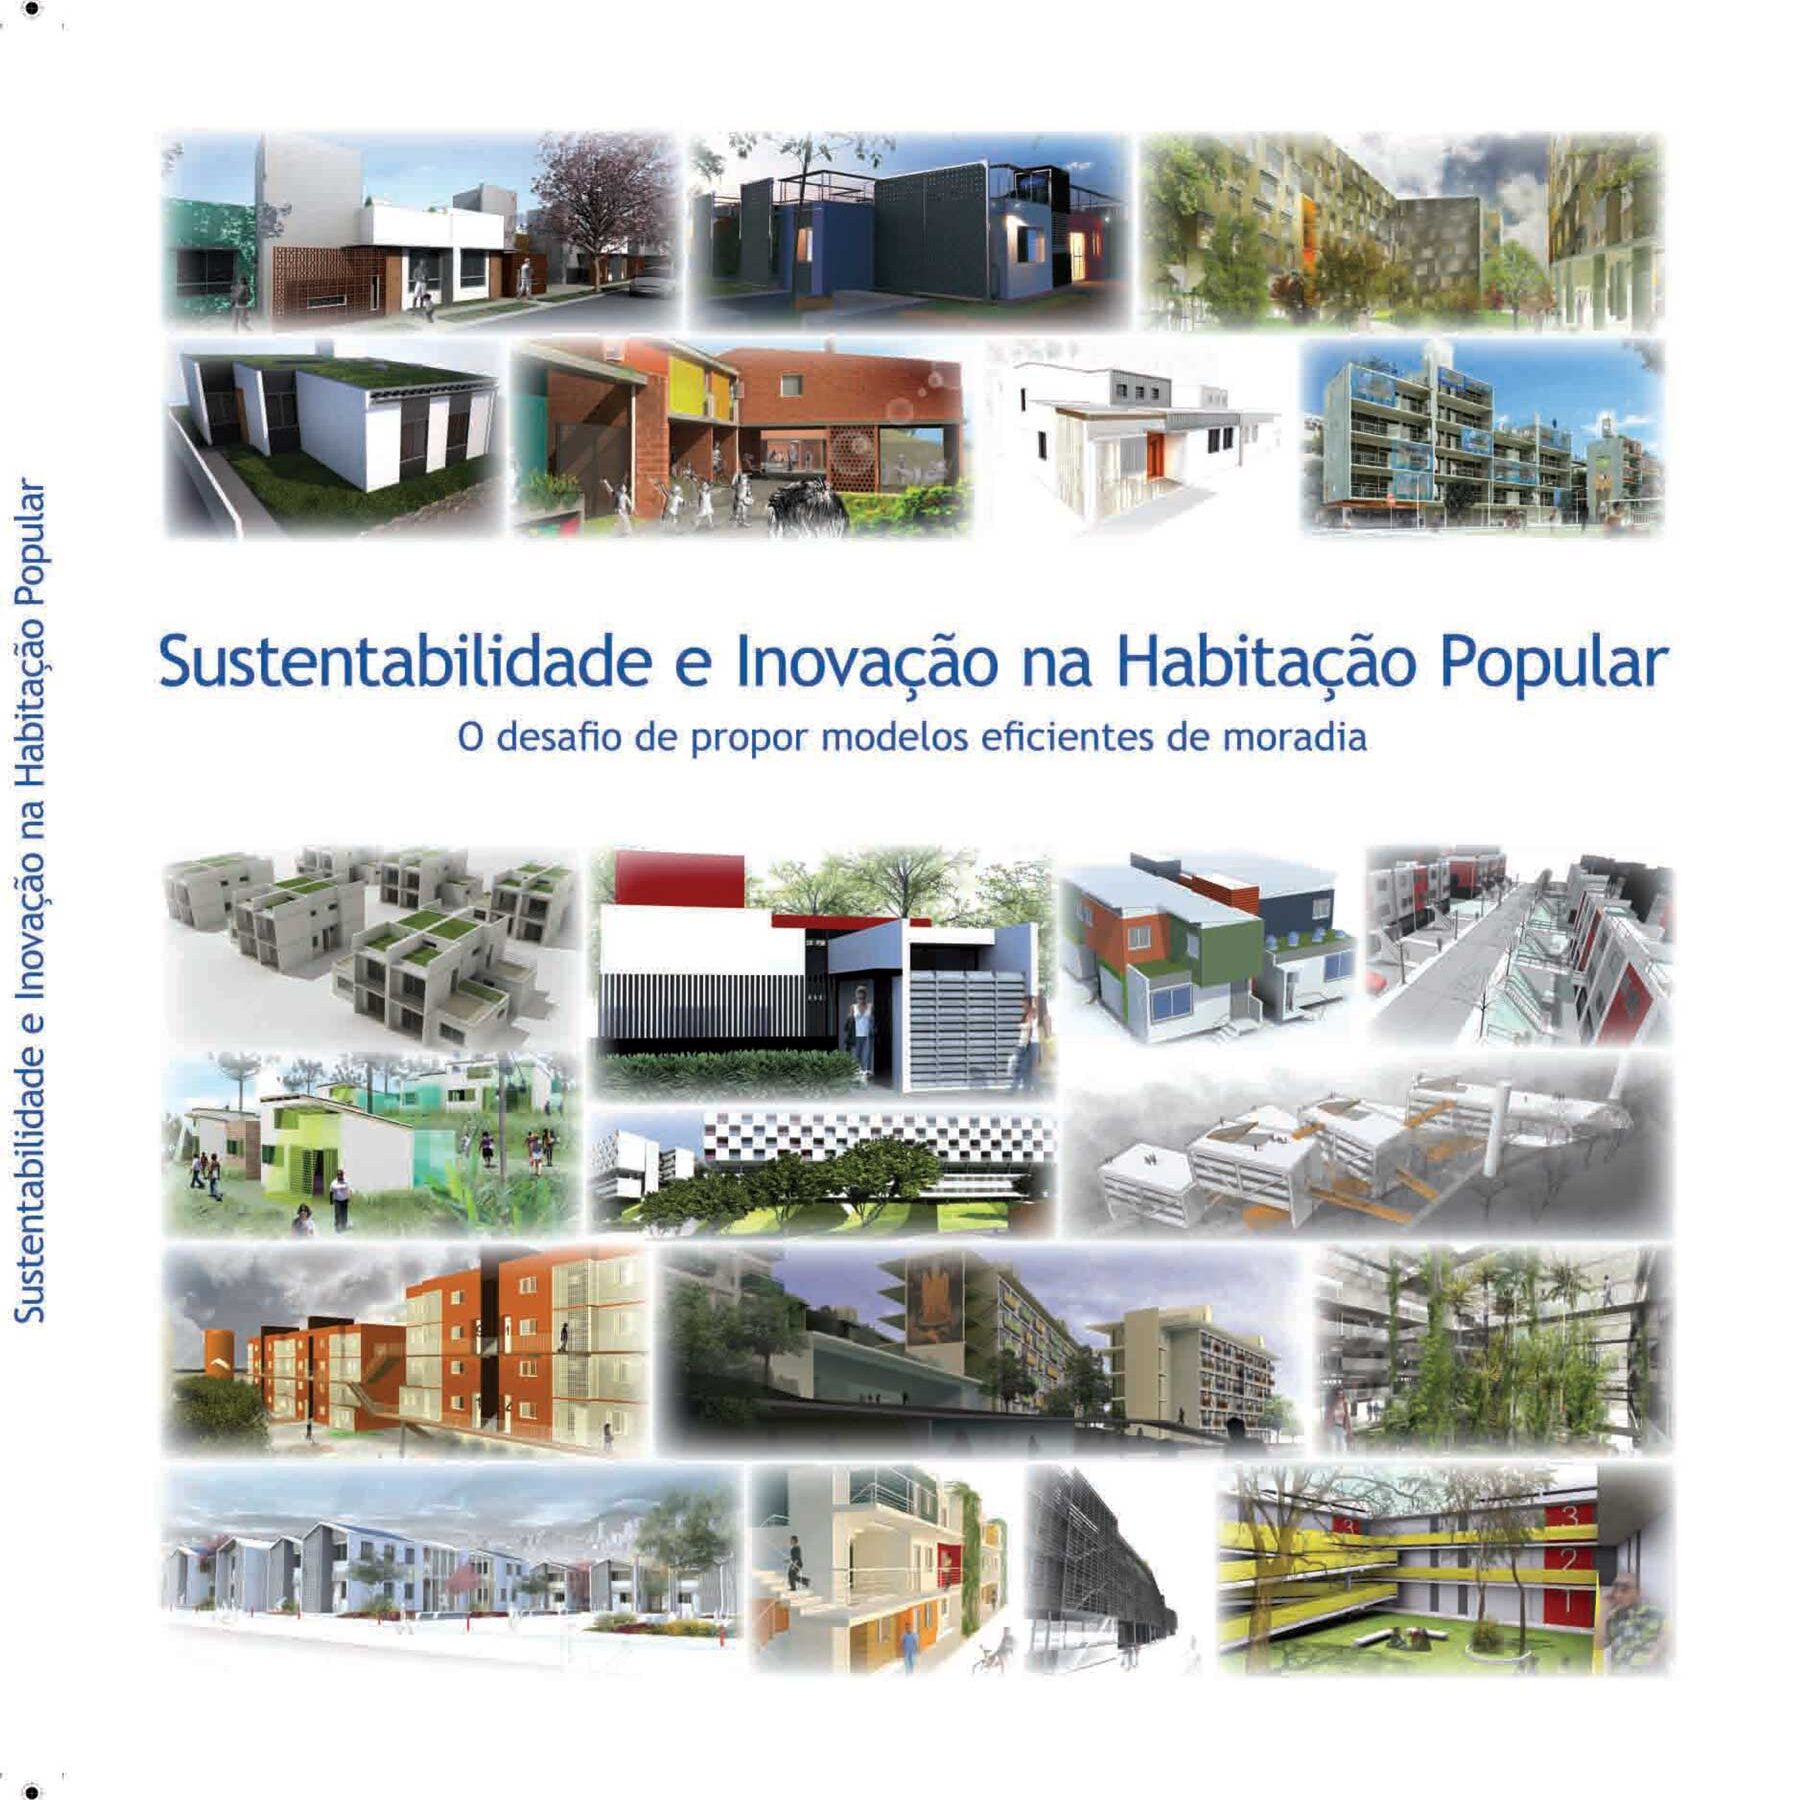 Sustentabilidade e Inovação na Habitação Popular